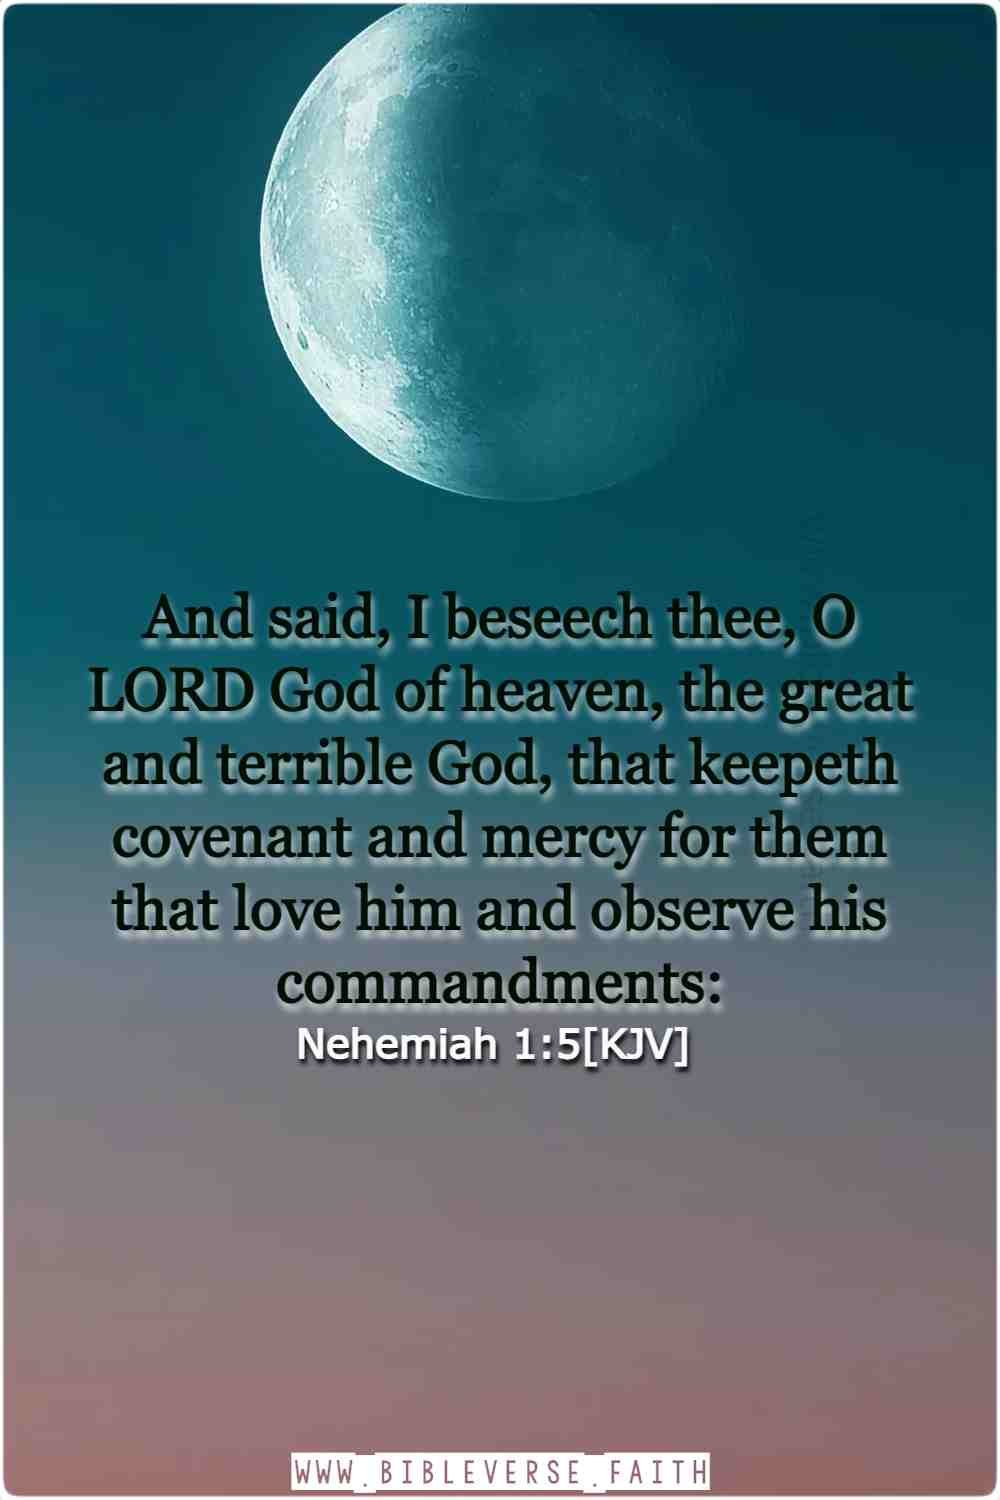 nehemiah 1 5[kjv] god is love scripture